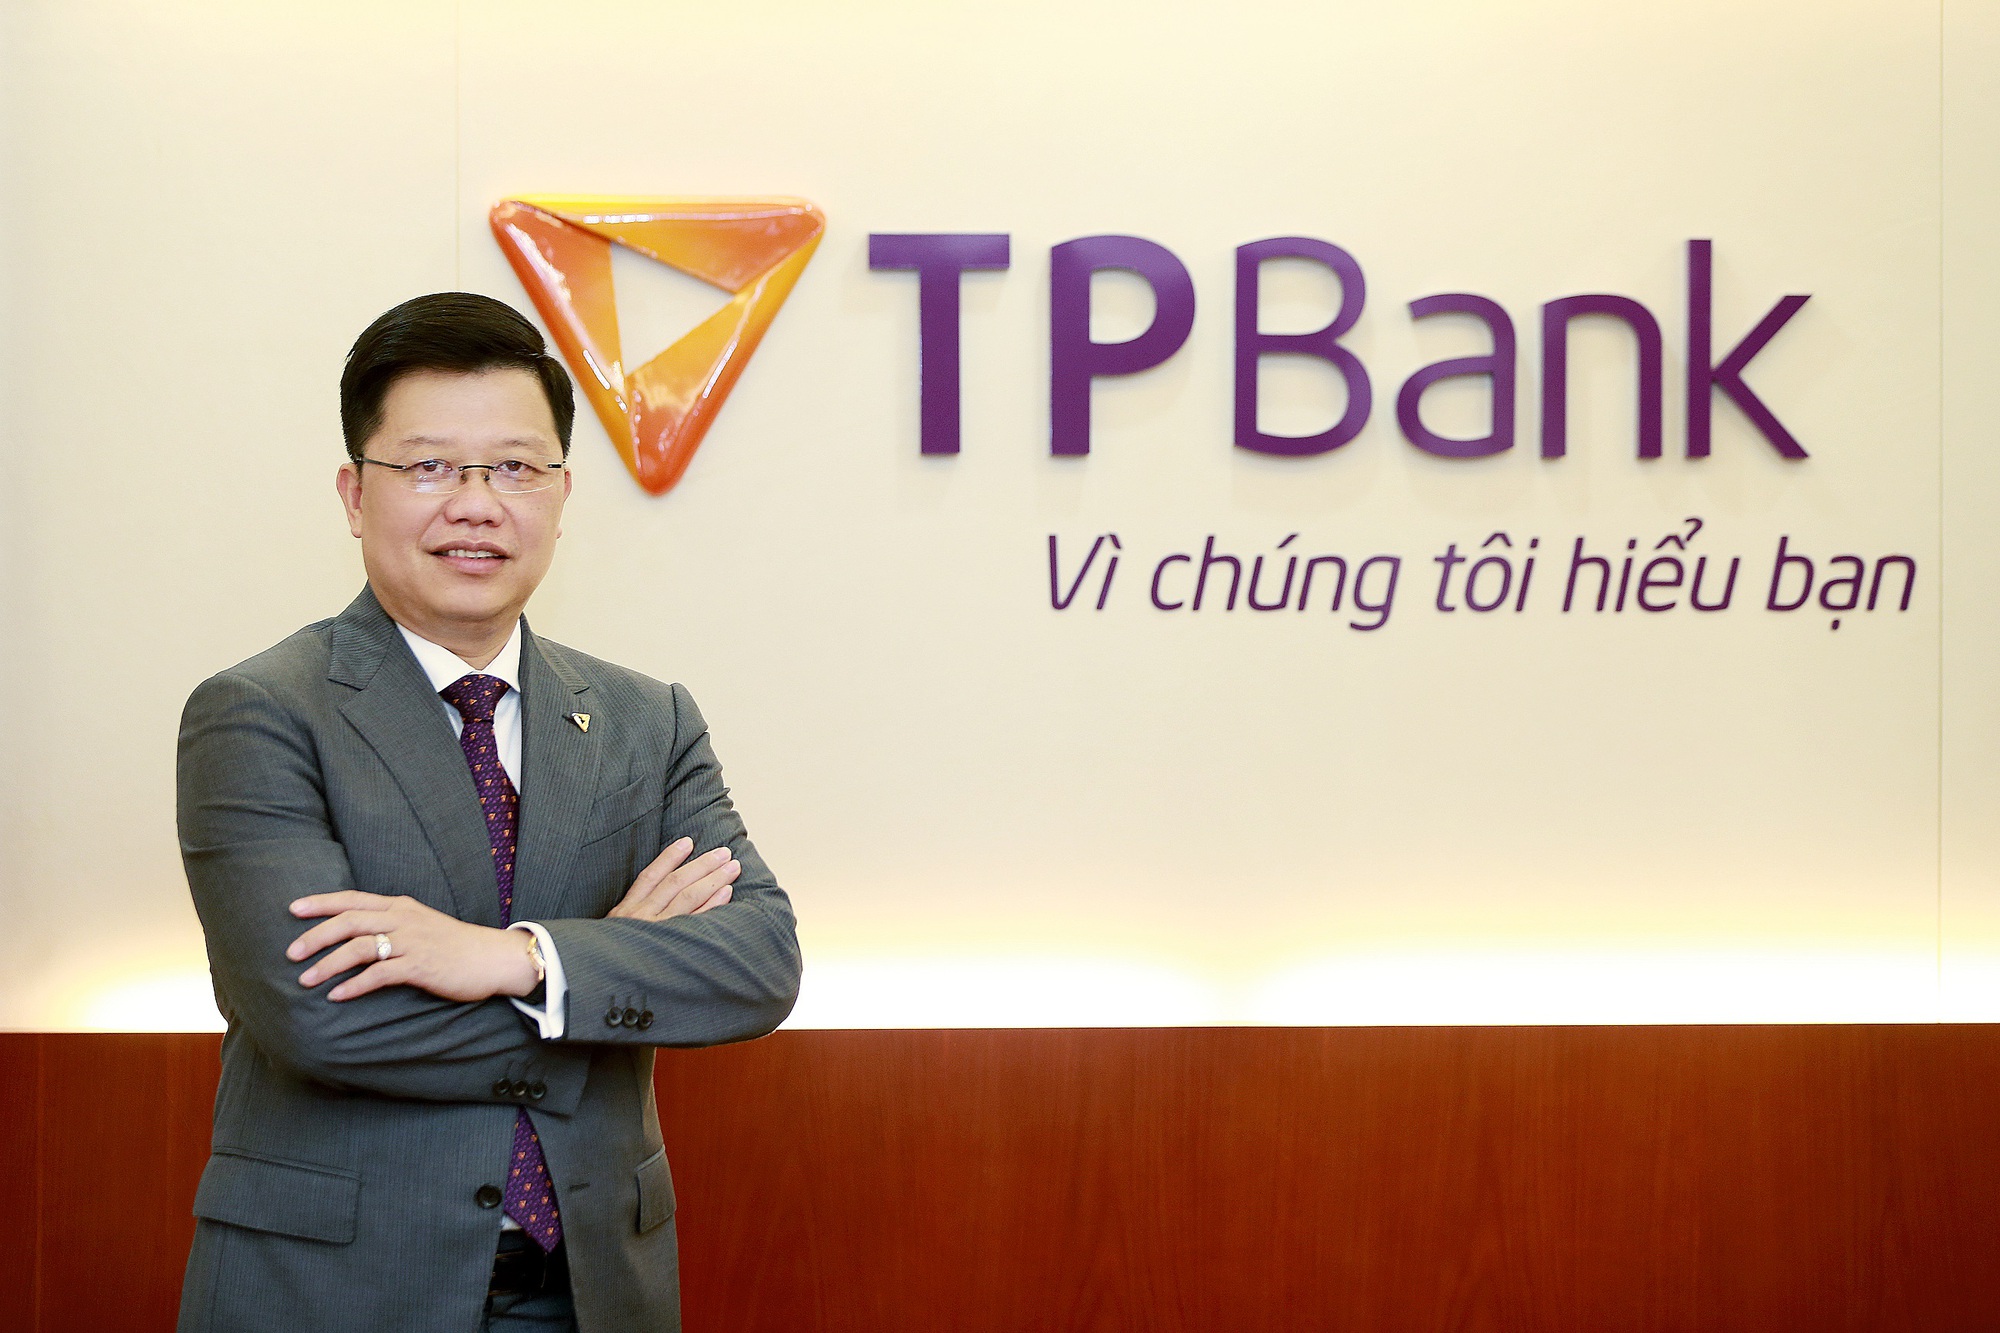 CEO Nguyễn Hưng: TPBank đã vươn mình rực rỡ và đang bước tiếp trên hành trình phát triển bền vững